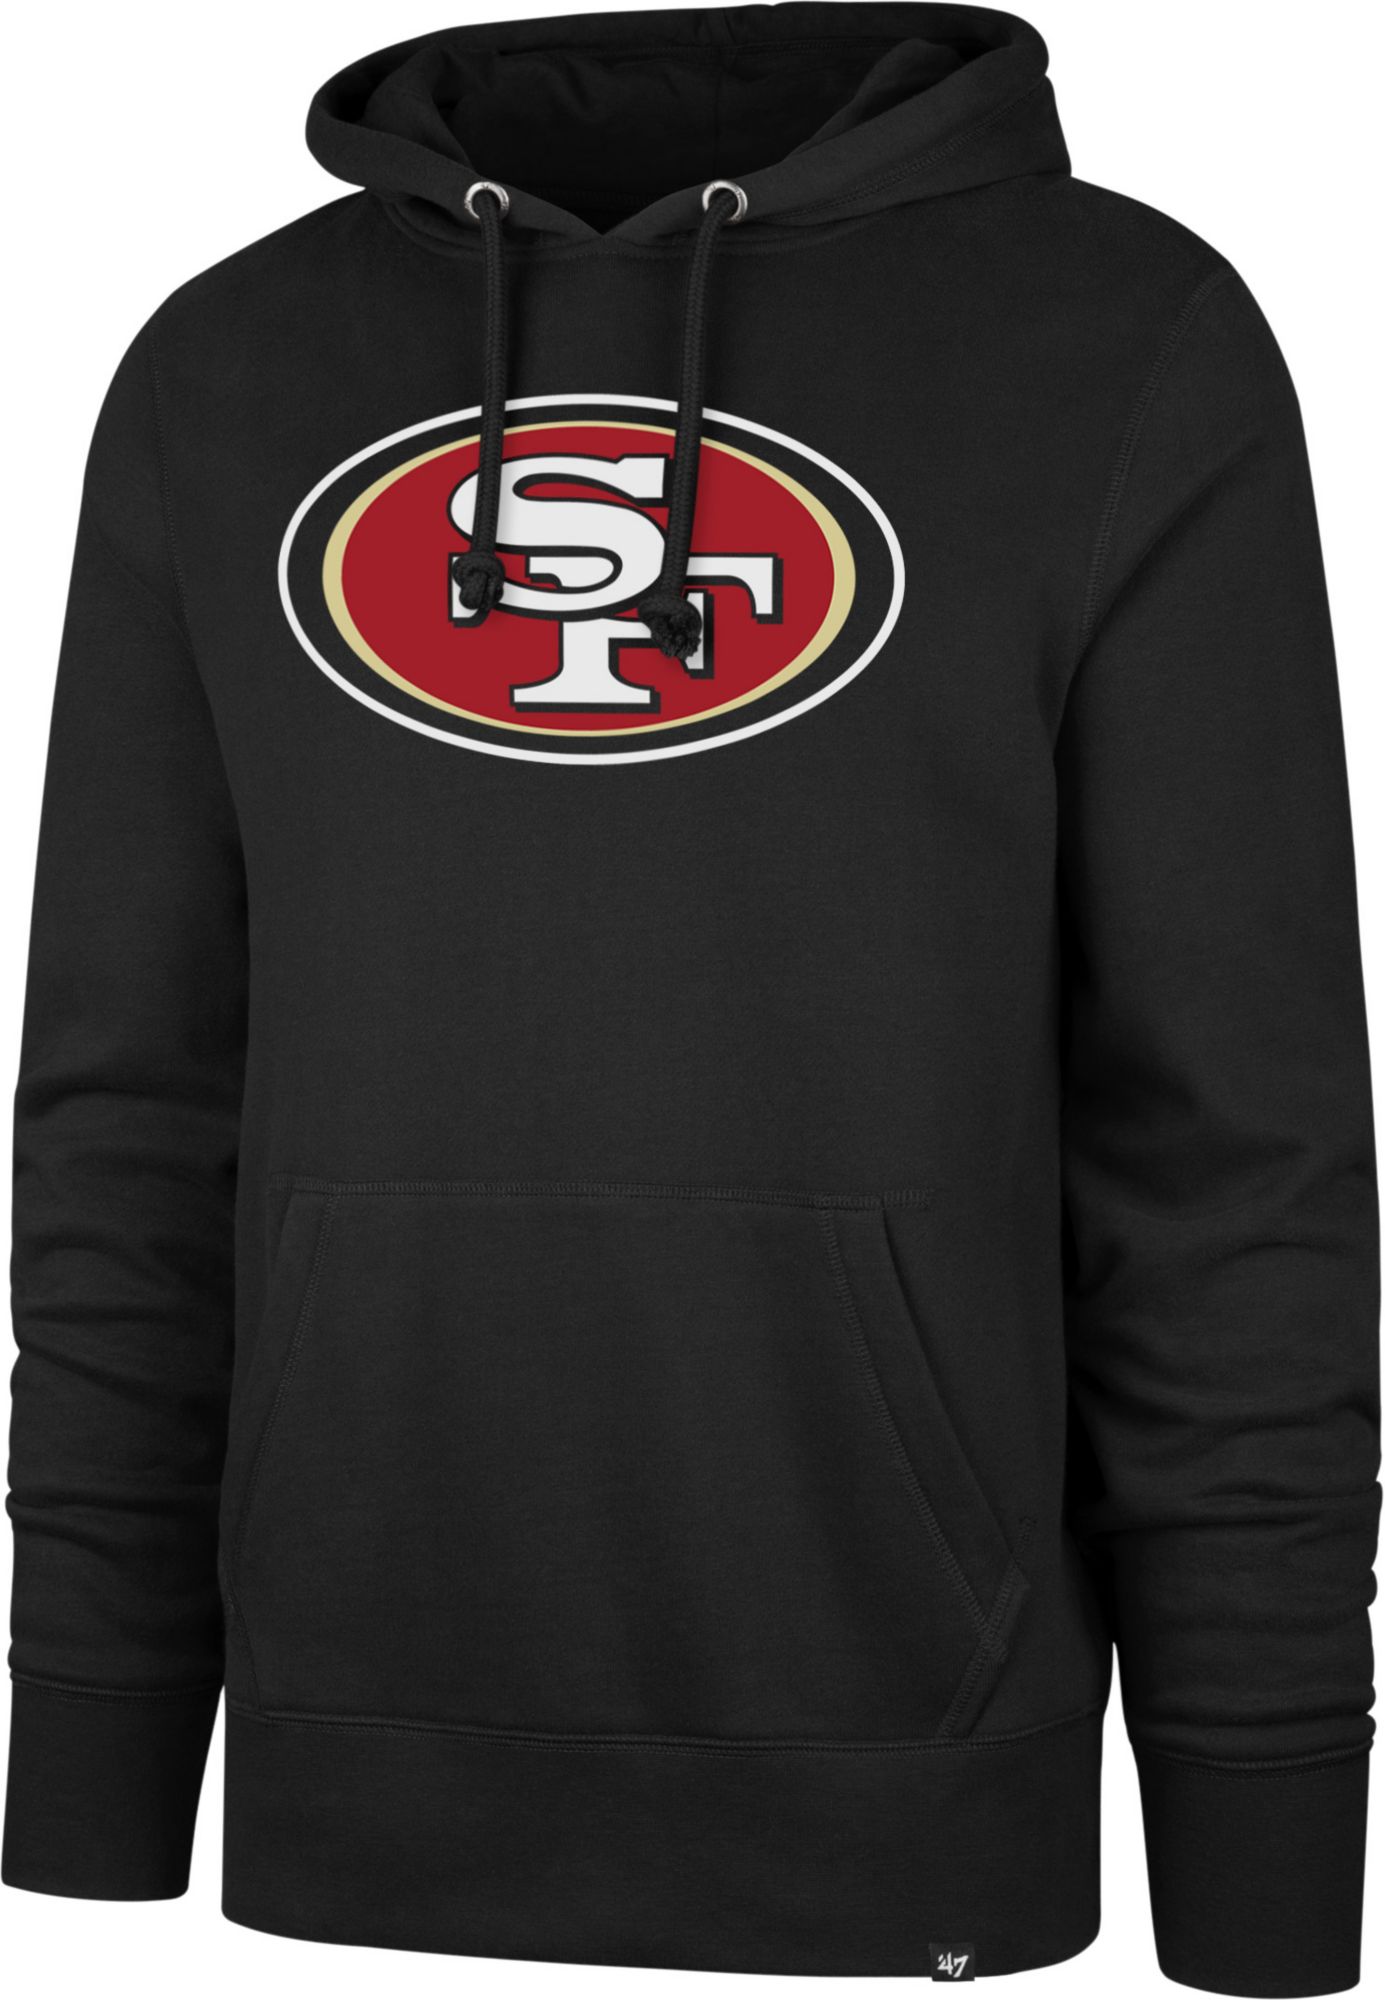 49ers black zip up hoodie